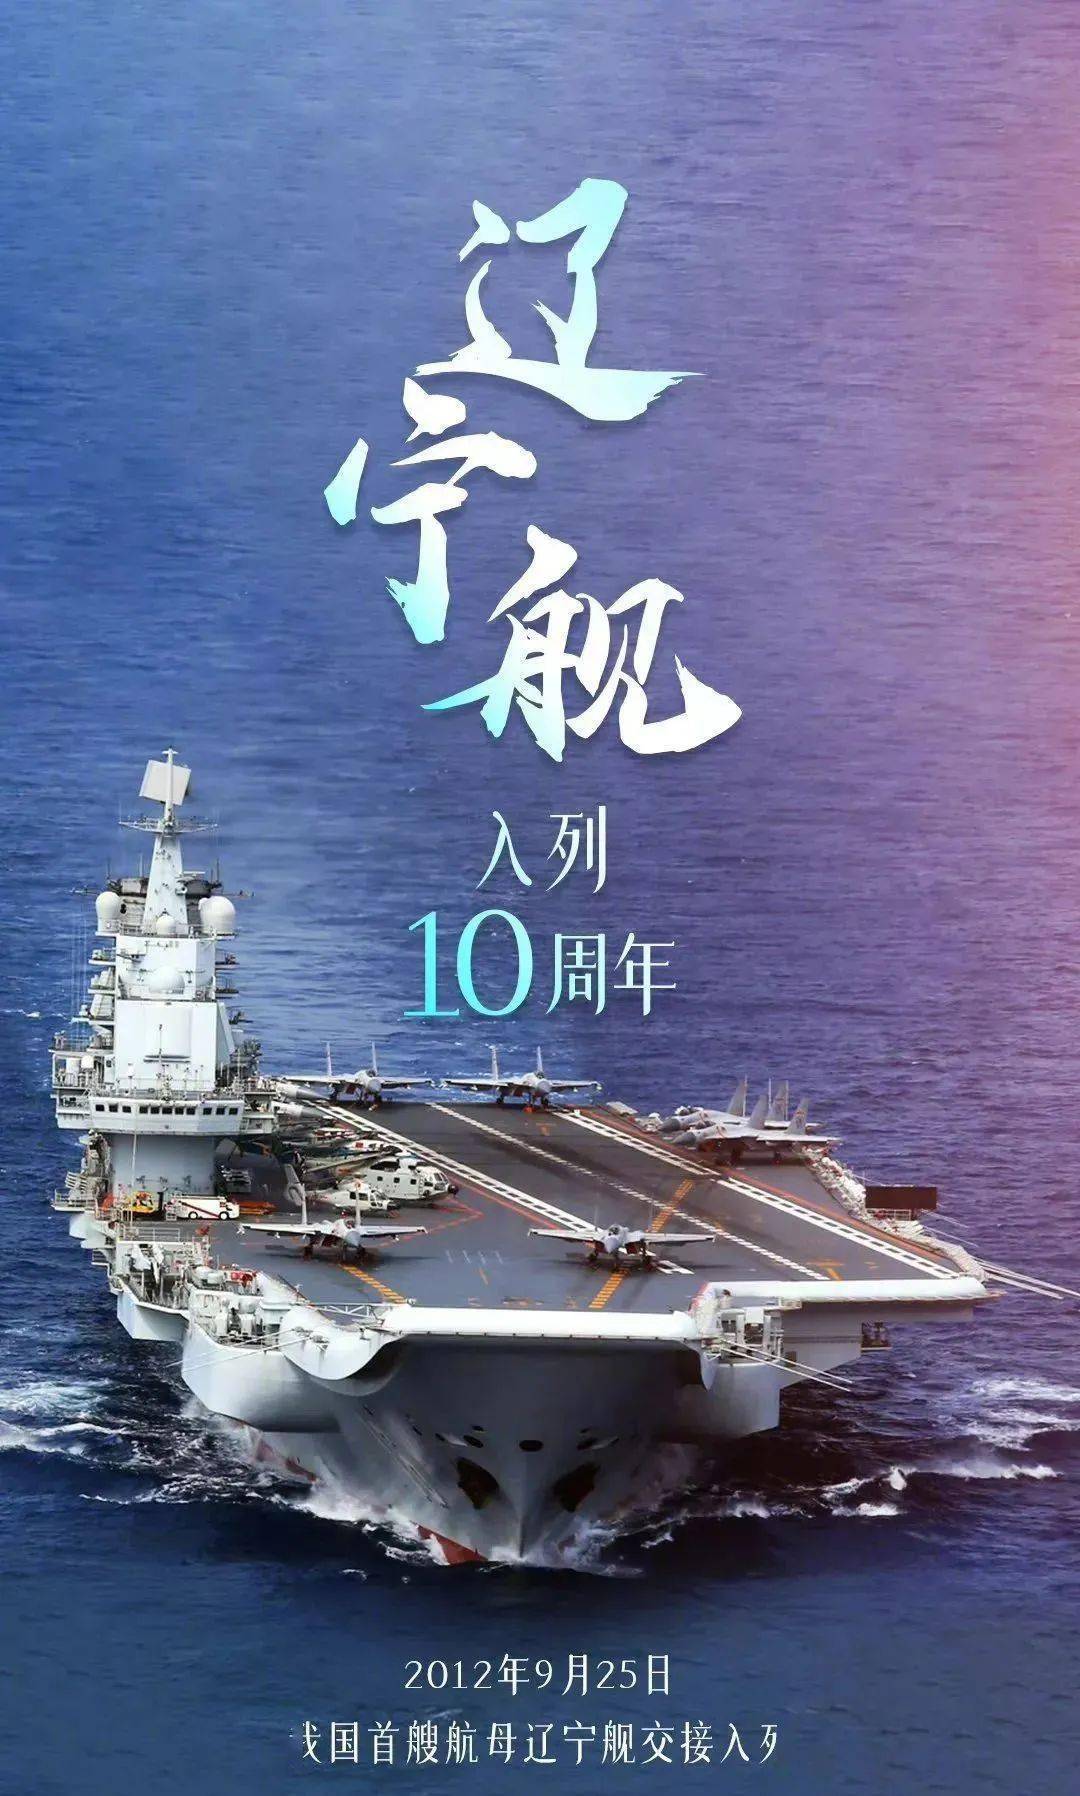 我国完全自主设计建造的首艘弹射型航母——中国第三艘航母福建舰下水